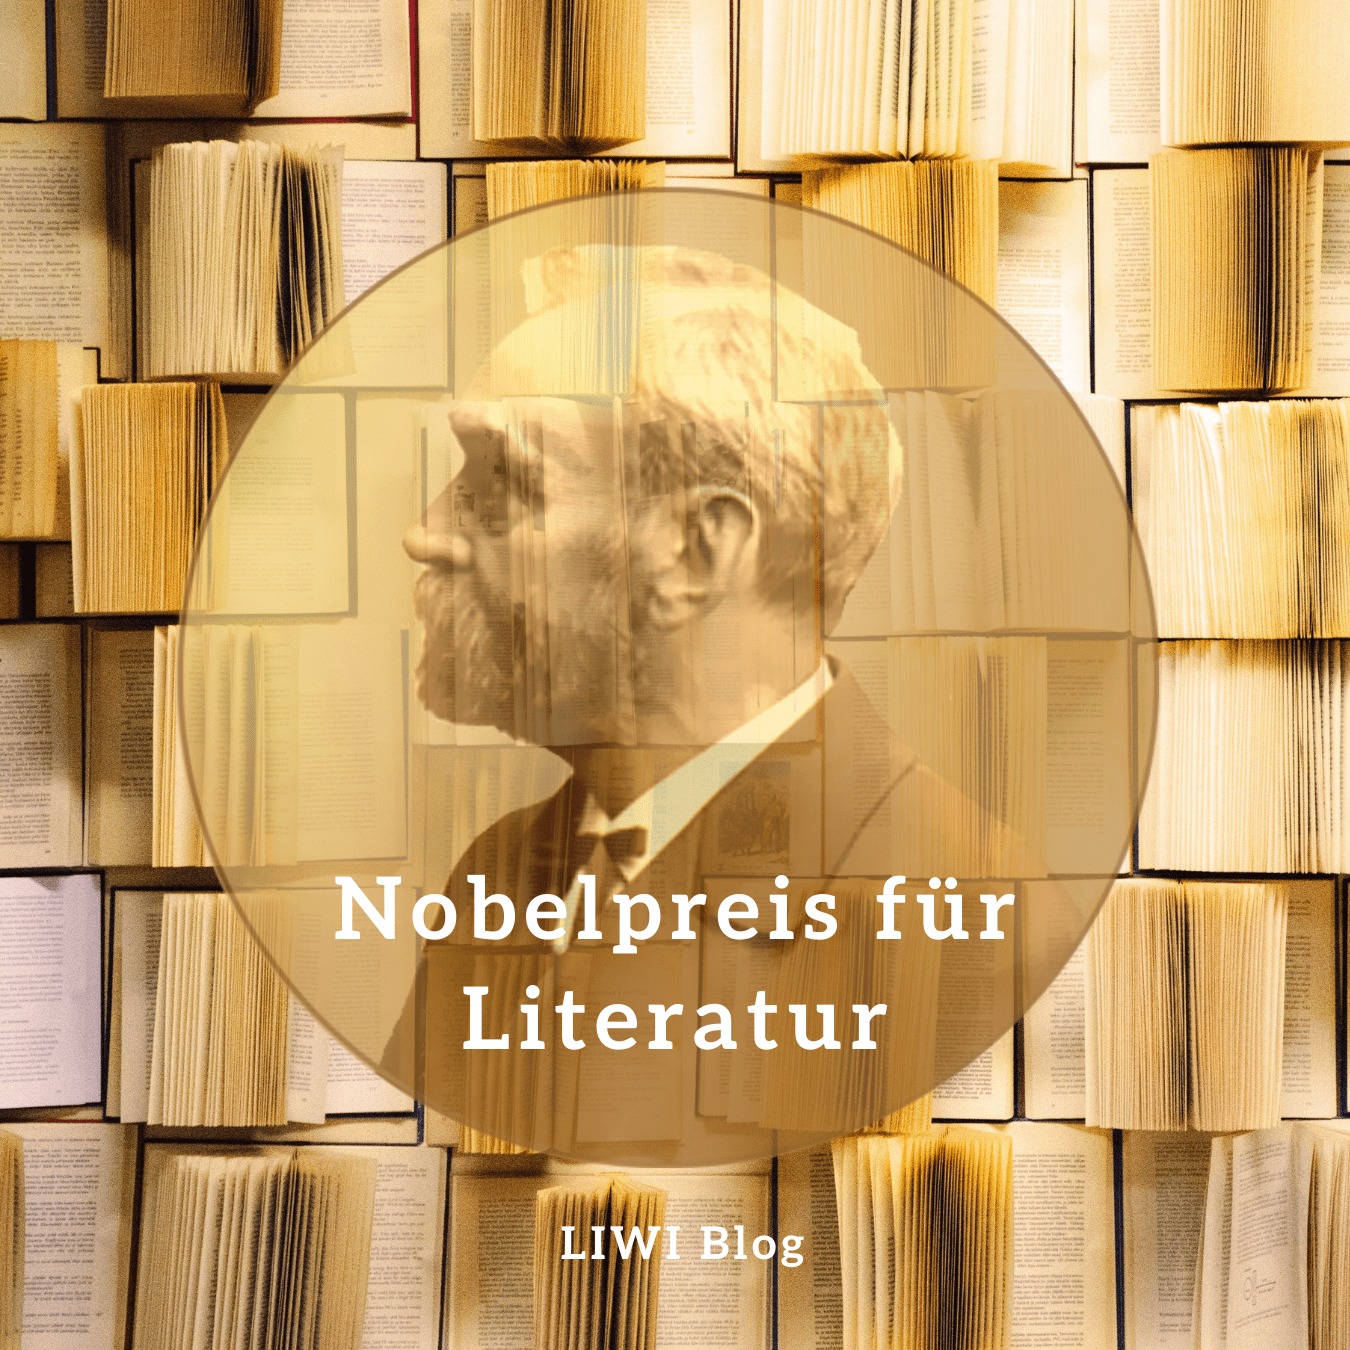 Nobelpreis-fuer-literatur-gewinner 